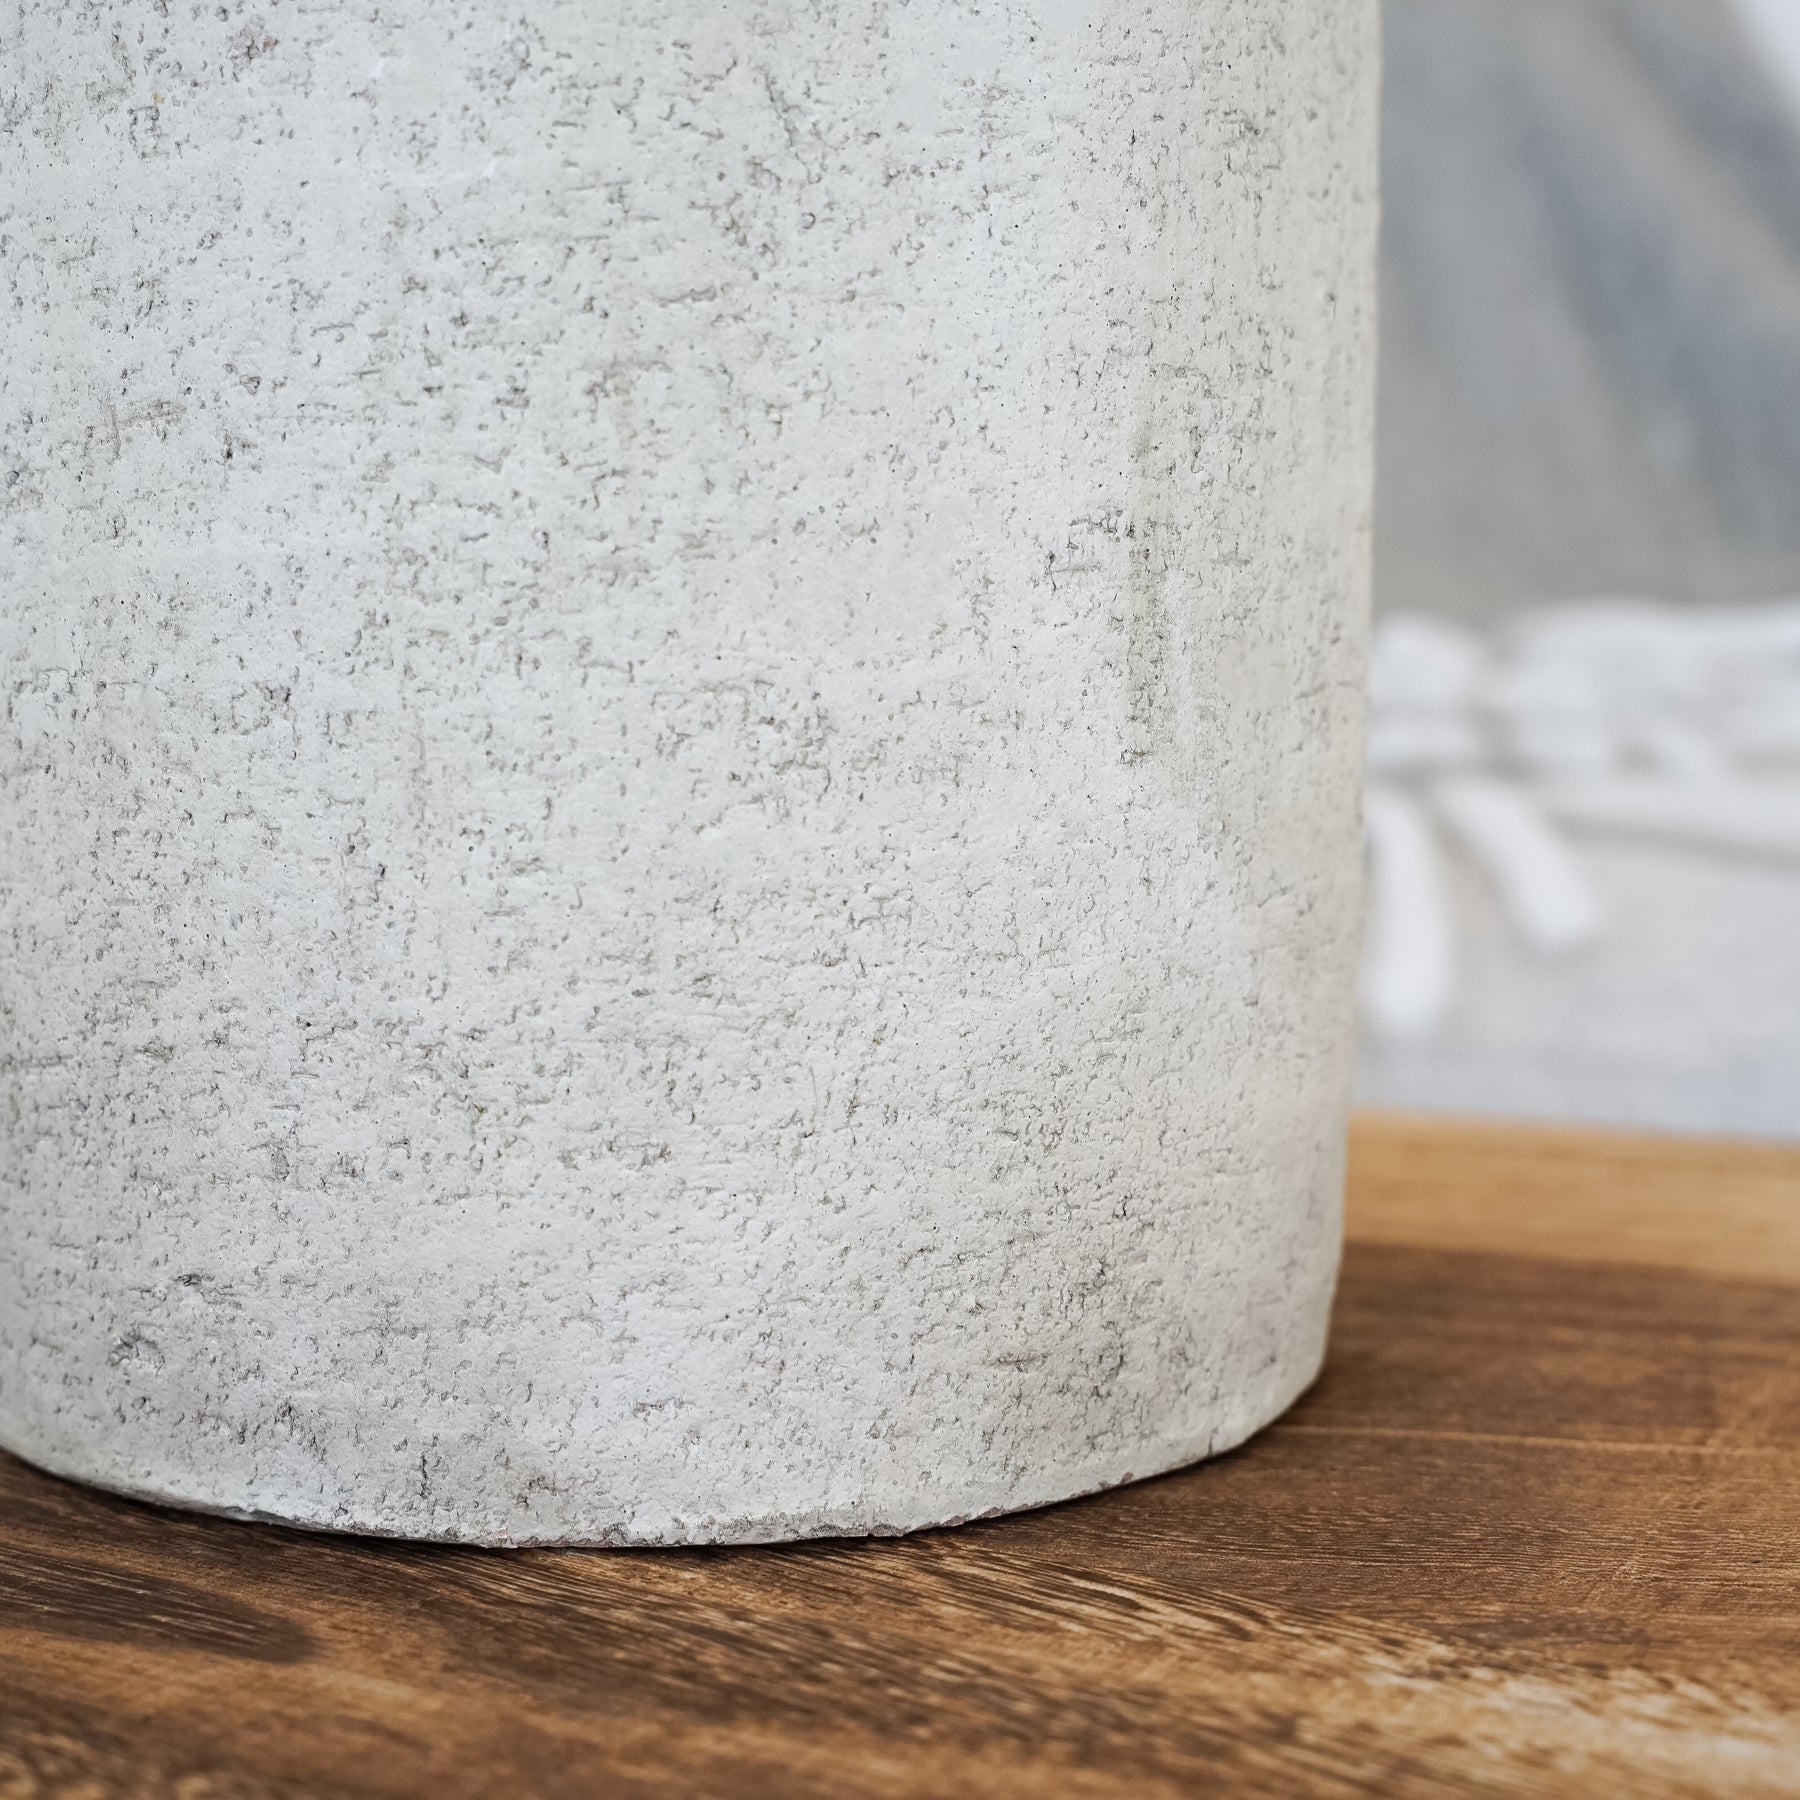 Detail shot of Beige Textured Terracotta Large Vase base